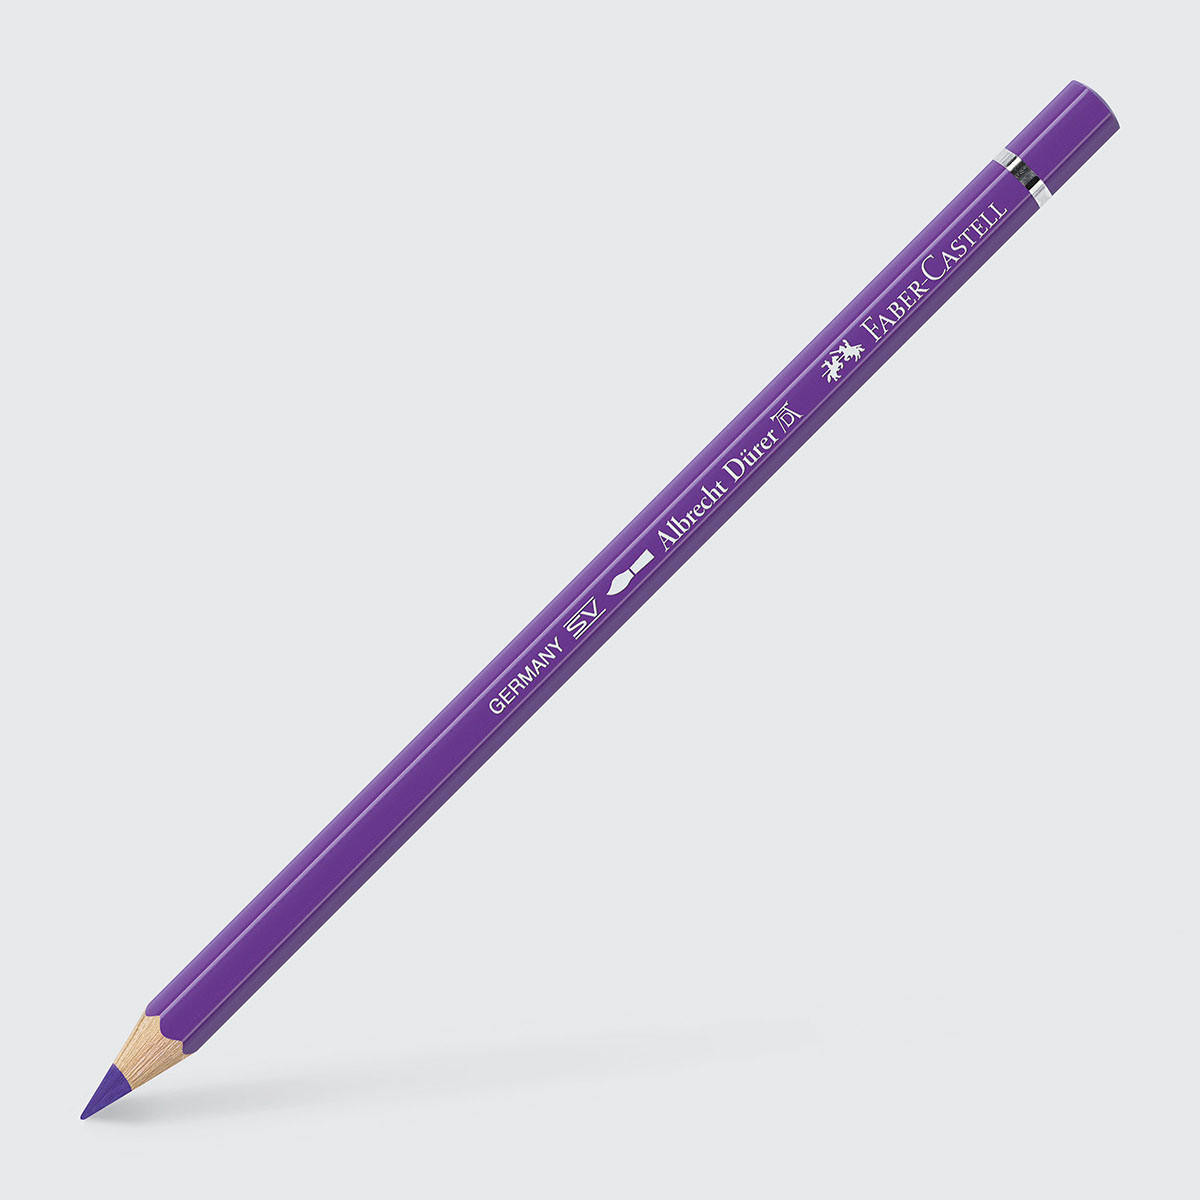 Faber-Castell Albrecht Durer Artists’ Watercolour Pencil One Size Purple Violet 136